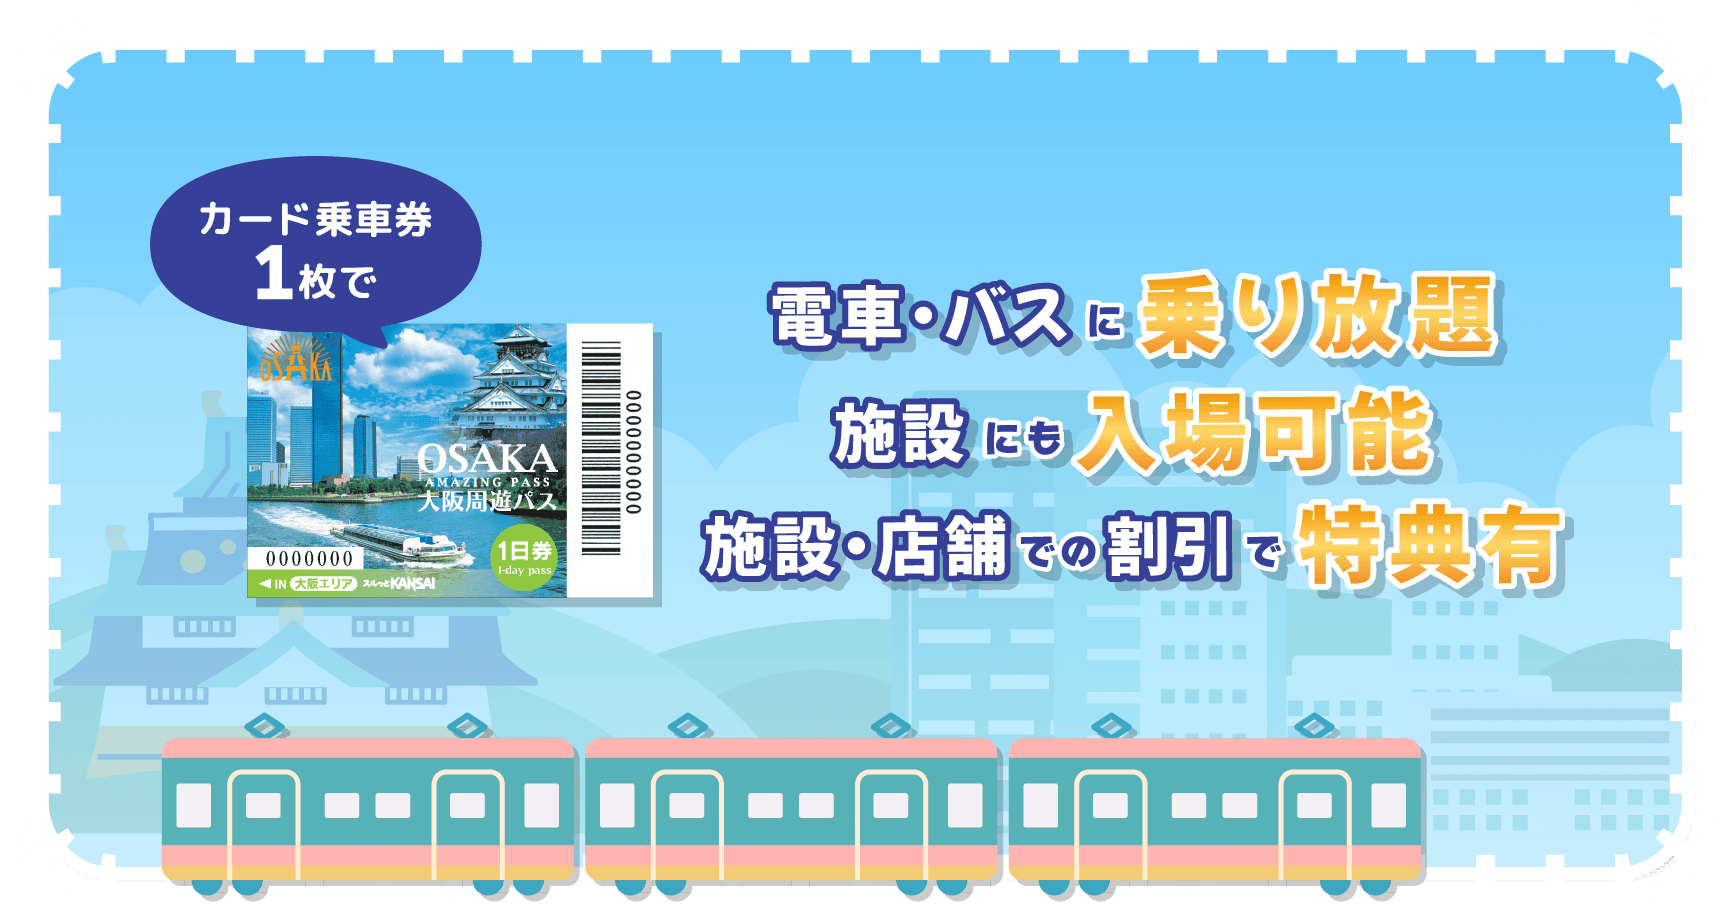 大阪周遊パス 電車・バスに乗り放題、施設にも入場可能、施設・店舗での割引で特典有り